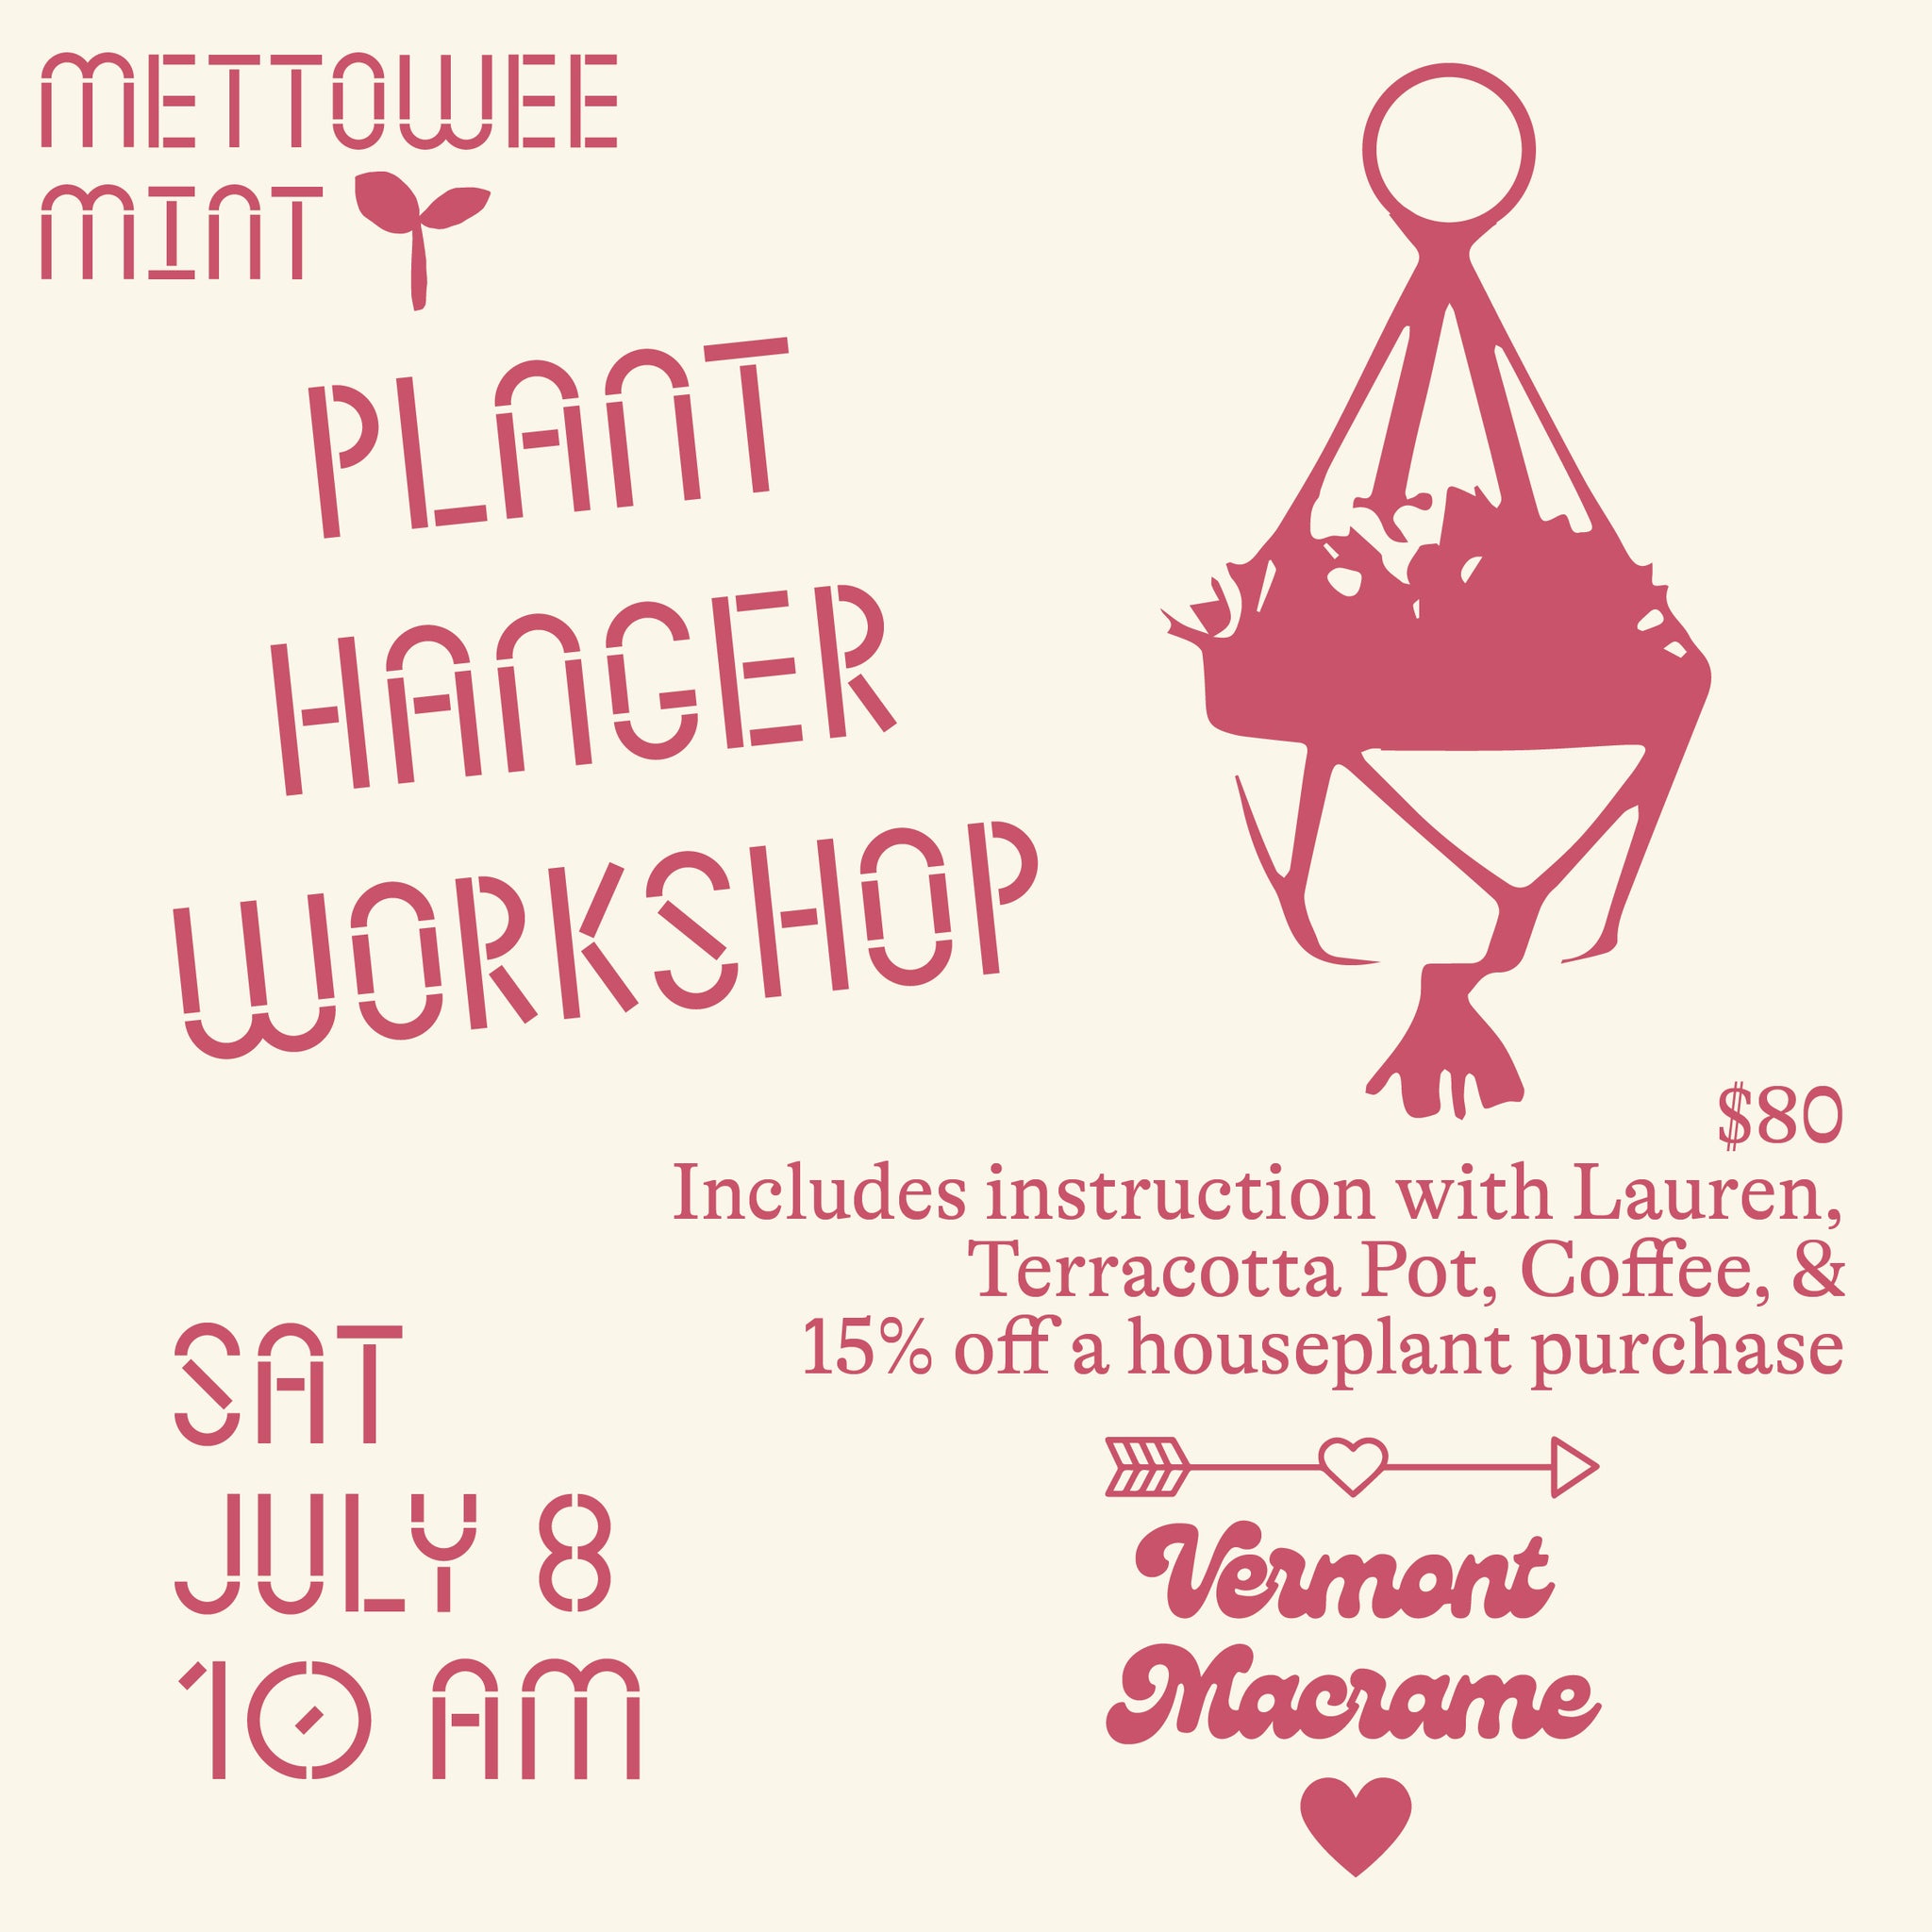 Plant Hanger Workshop